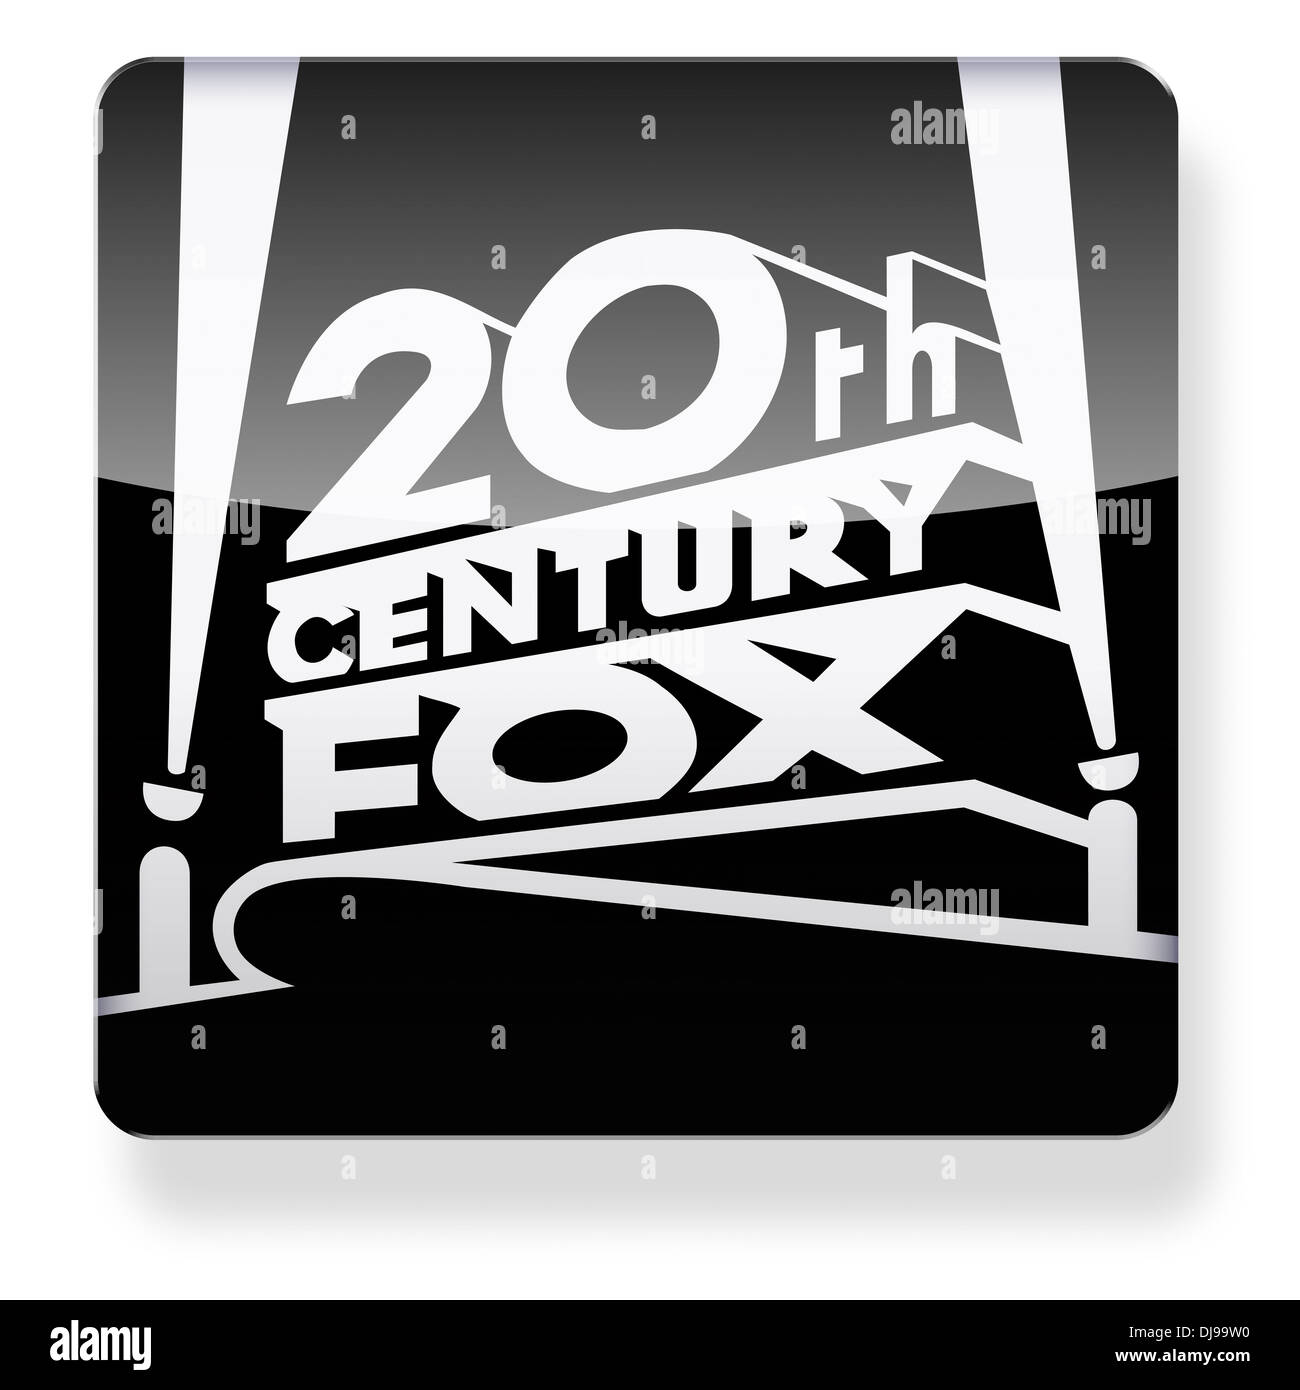 Logotipo de la 20th Century Fox como el icono de una aplicación. Trazado de recorte incluido. Foto de stock